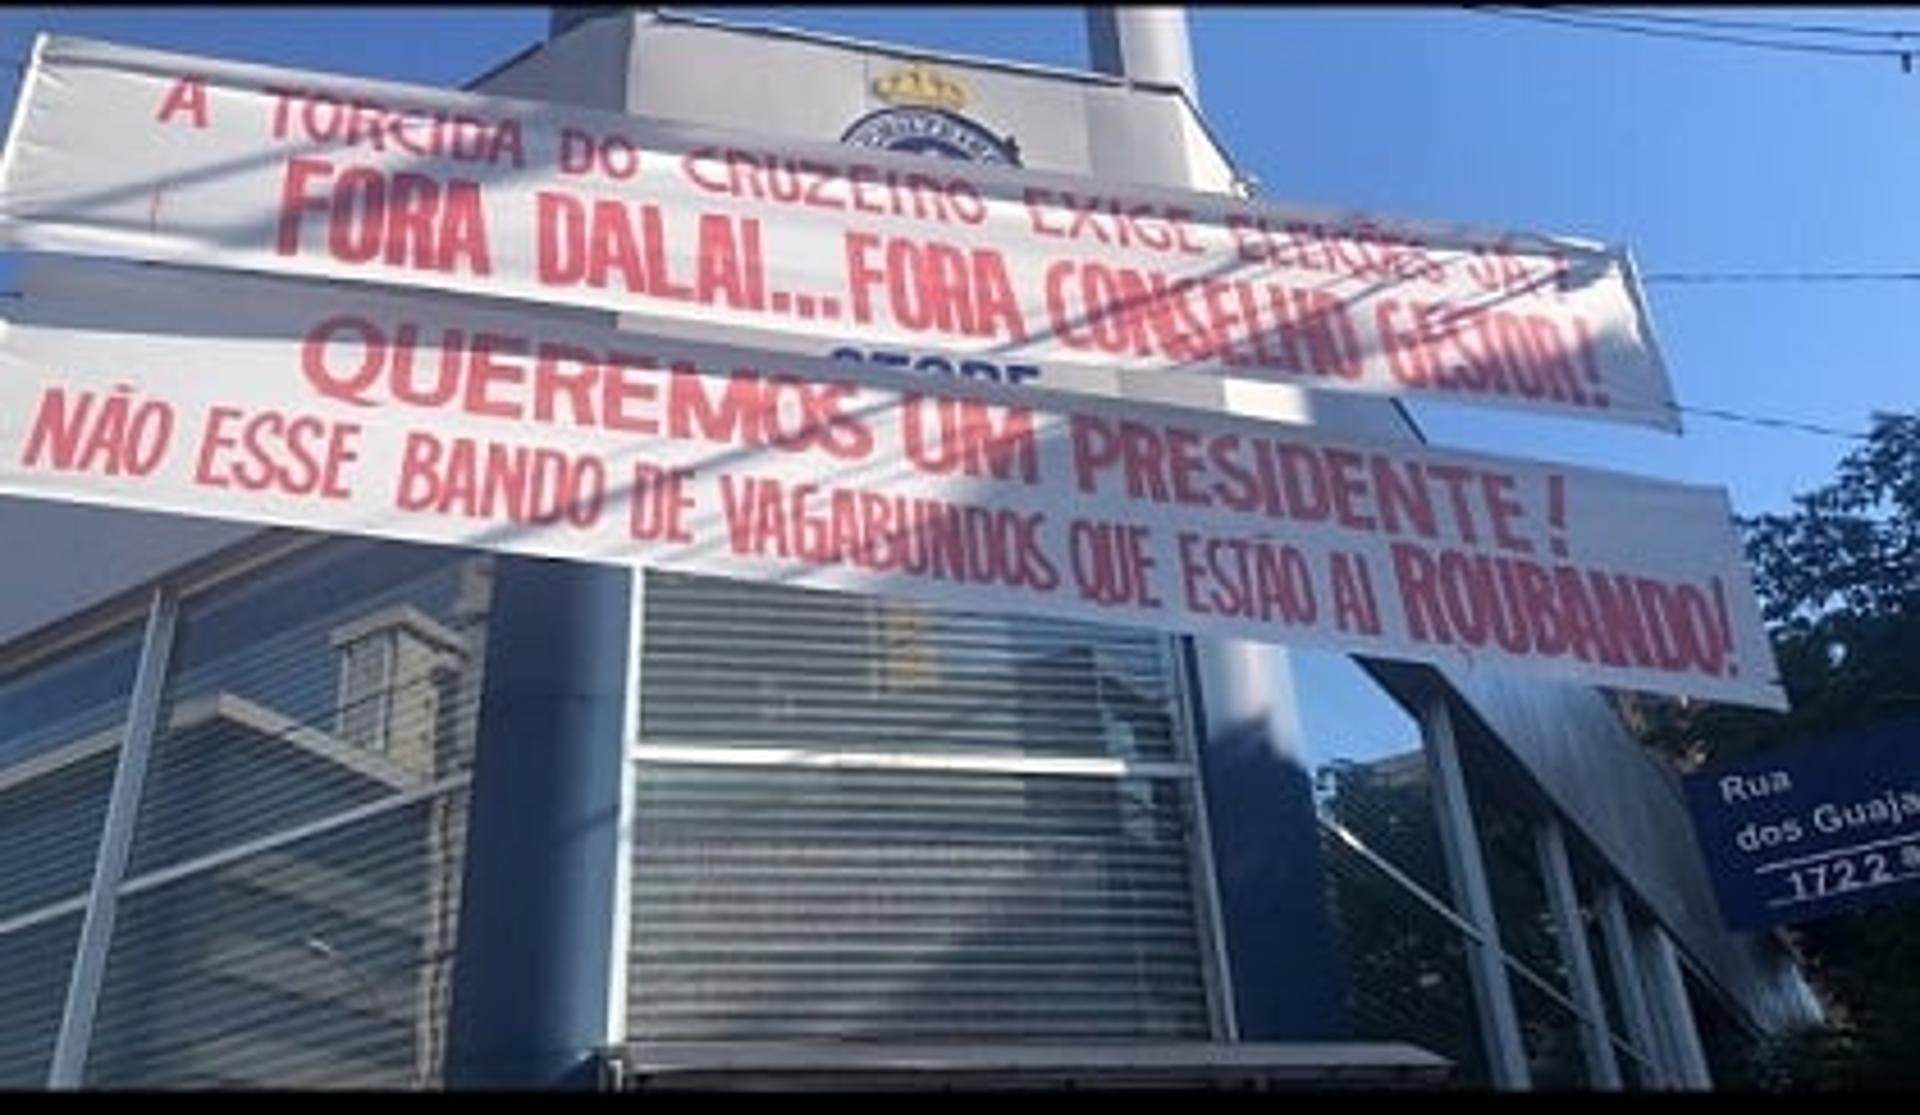 As faixas colocadas demonstram que o cenário político ainda está agitado na Raposa